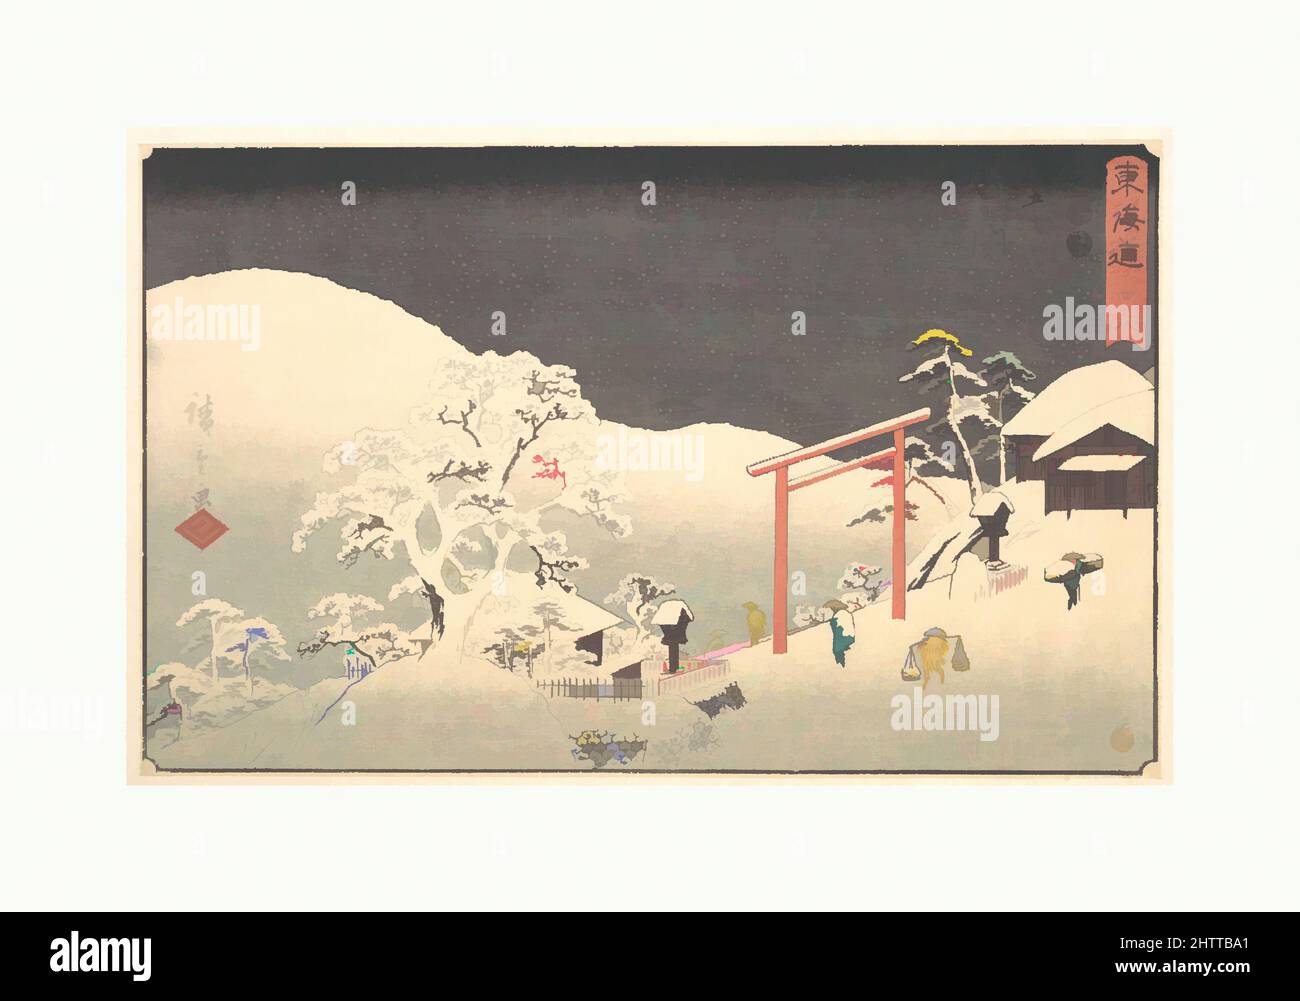 Art inspiré par Seki, 東海道五十三次 関, époque Edo (1615–1868), env. 1848–49, Japon, impression polychrome sur bois; encre et couleur sur papier, total: 8 3/4 x 13 3/4in. (22,2 x 34,9cm), Prints, Utagawa Hiroshige (japonais, Tokyo (Edo) 1797–1858 Tokyo (Edo)), Seki était situé là où les deux autoroutes, les œuvres classiques modernisées par Artotop avec une touche de modernité. Formes, couleur et valeur, impact visuel accrocheur sur l'art émotions par la liberté d'œuvres d'art d'une manière contemporaine. Un message intemporel qui cherche une nouvelle direction créative. Artistes qui se tournent vers le support numérique et créent le NFT Artotop Banque D'Images